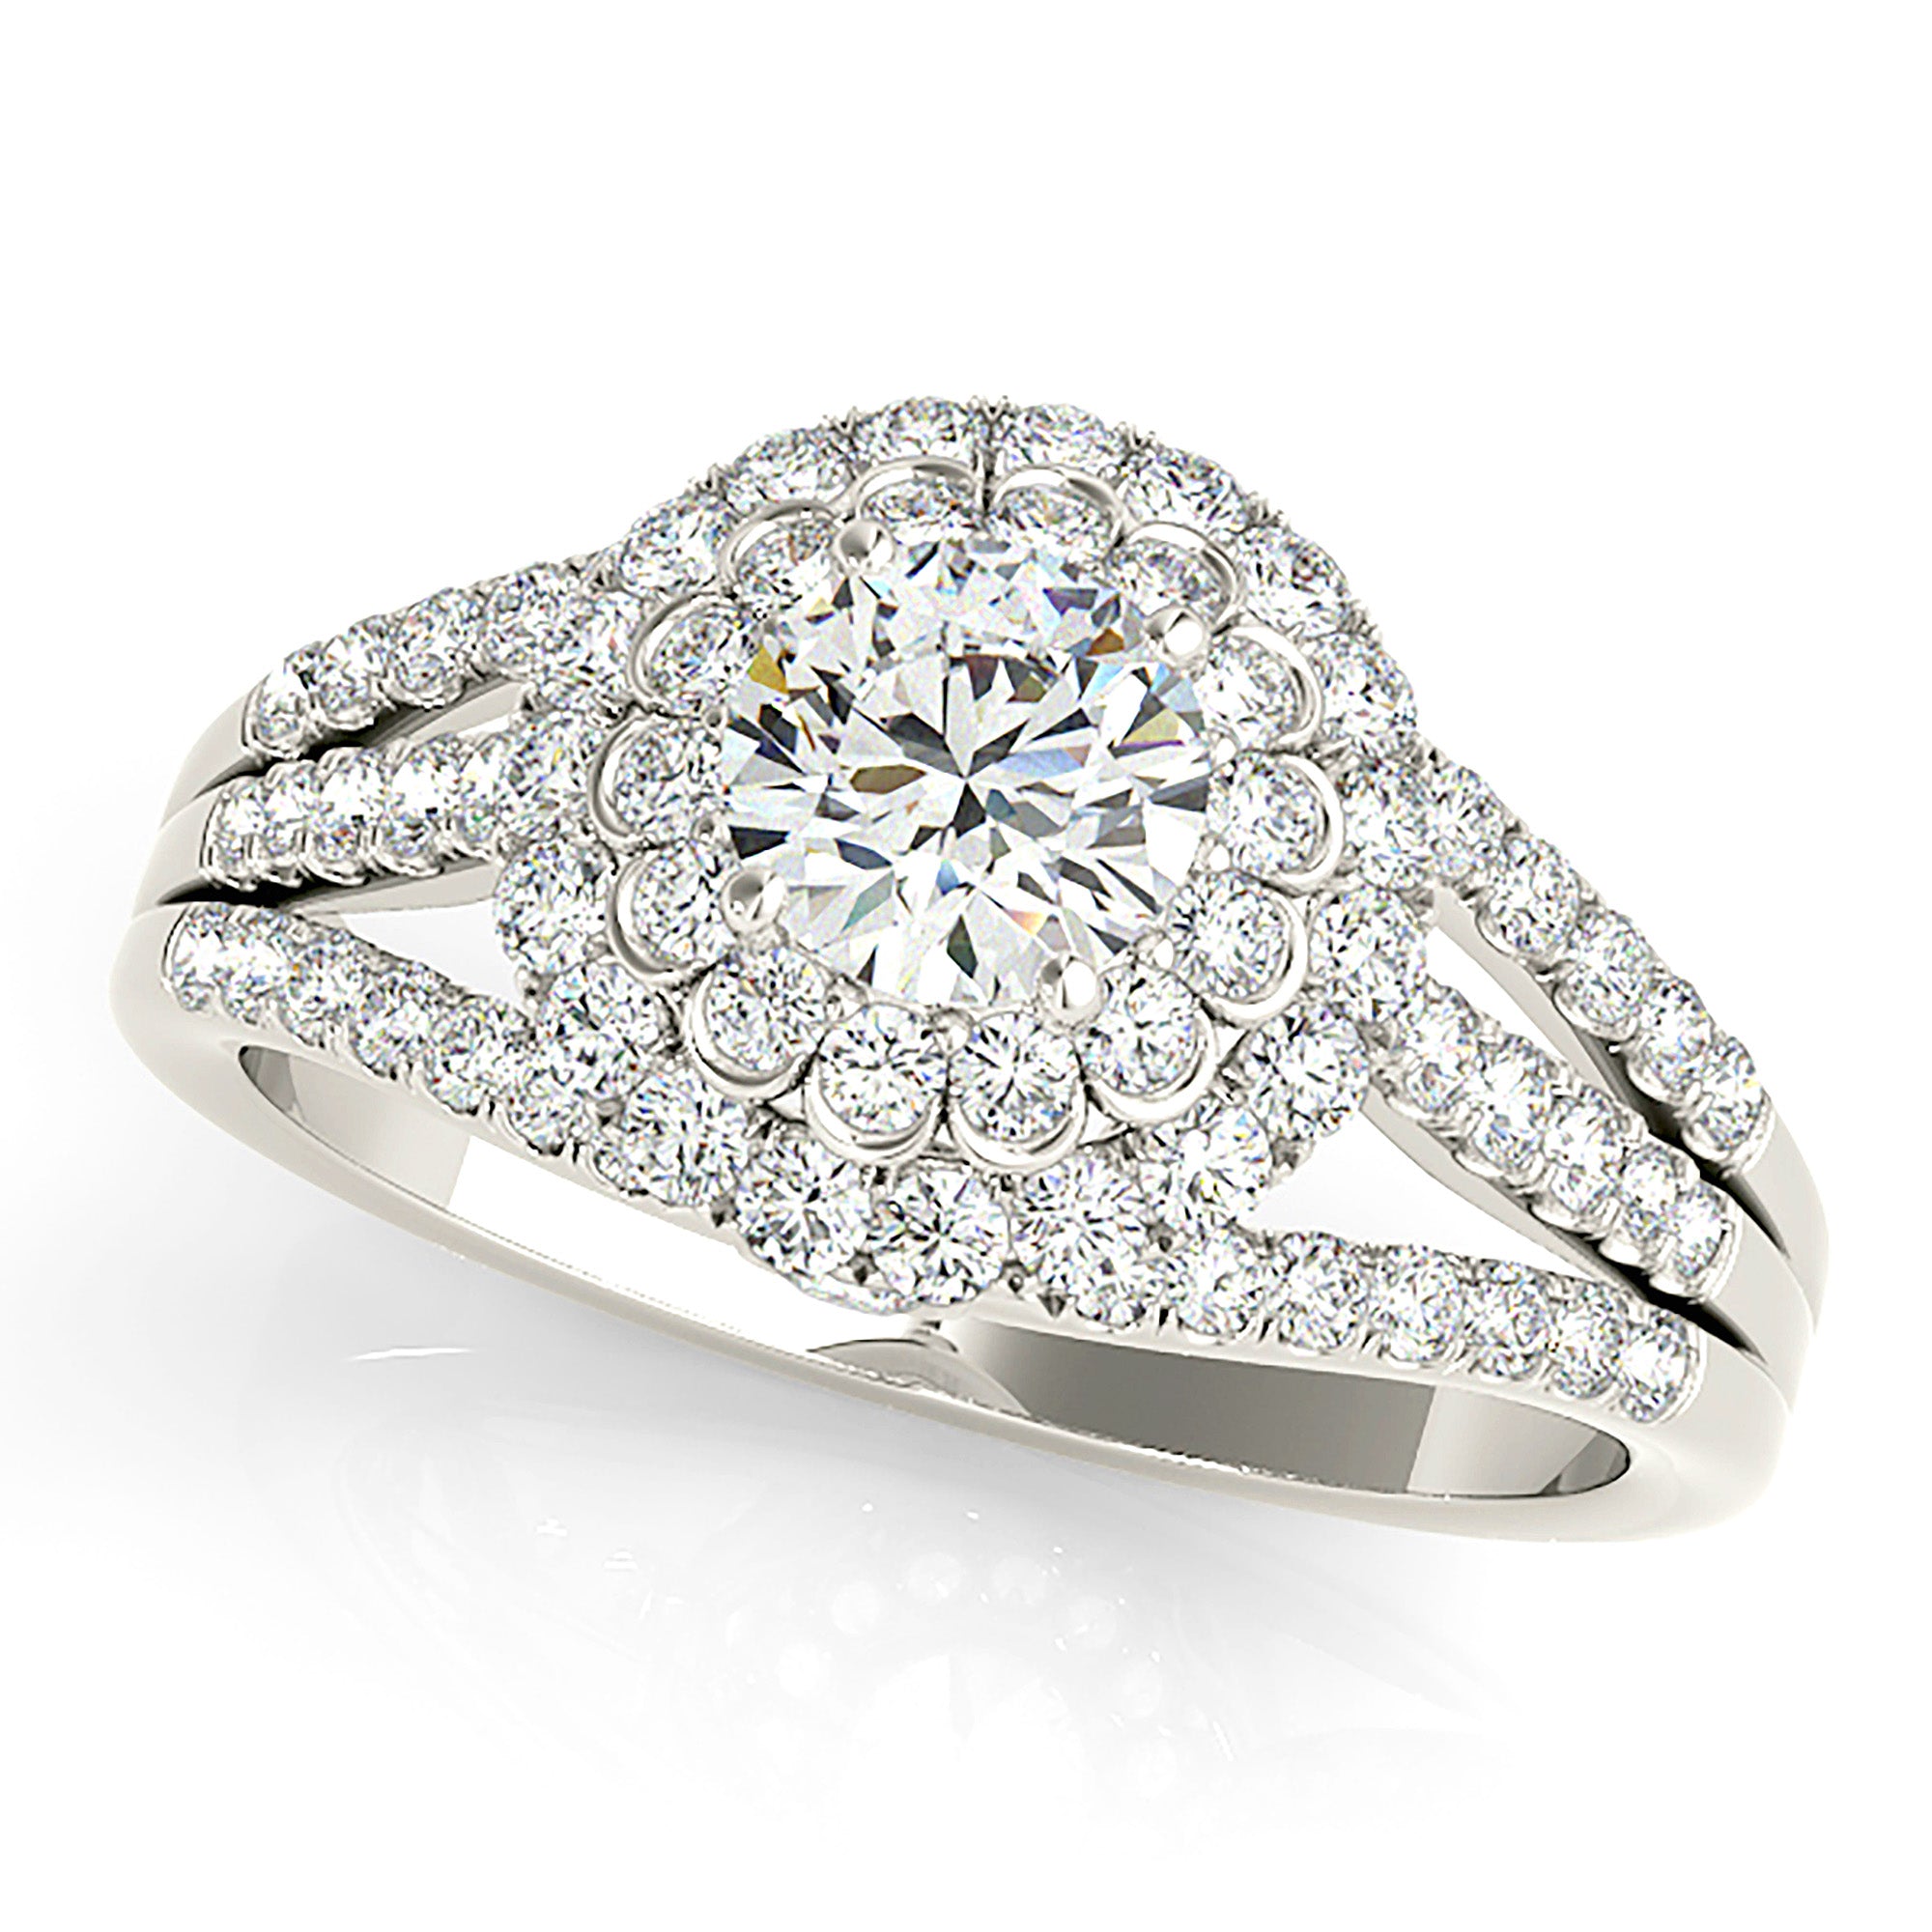 Halo Round Diamond Engagement Ring-in 14K/18K White, Yellow, Rose Gold and Platinum - Christmas Jewelry Gift -VIRABYANI